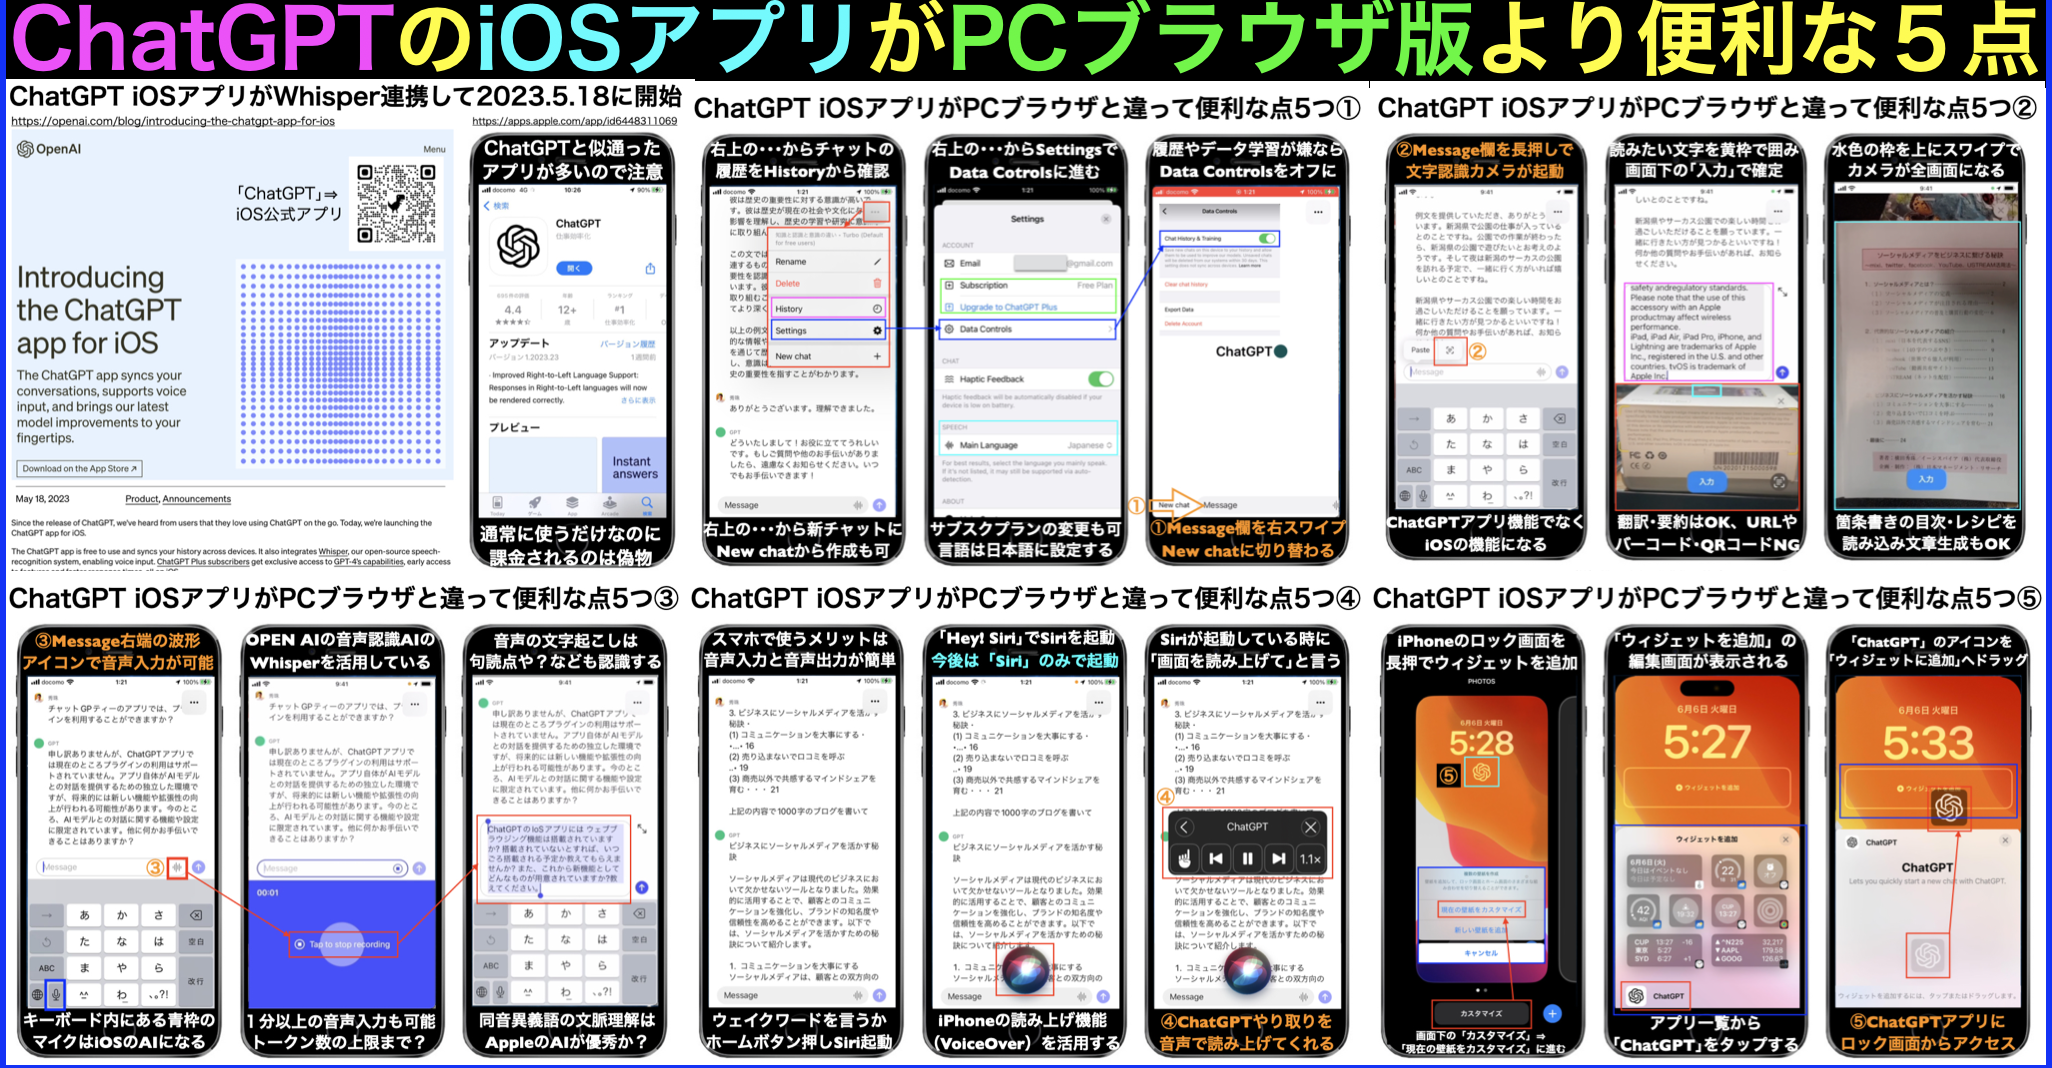 ChatGPT iOSアプリがPCブラウザと違って便利な5ポイント